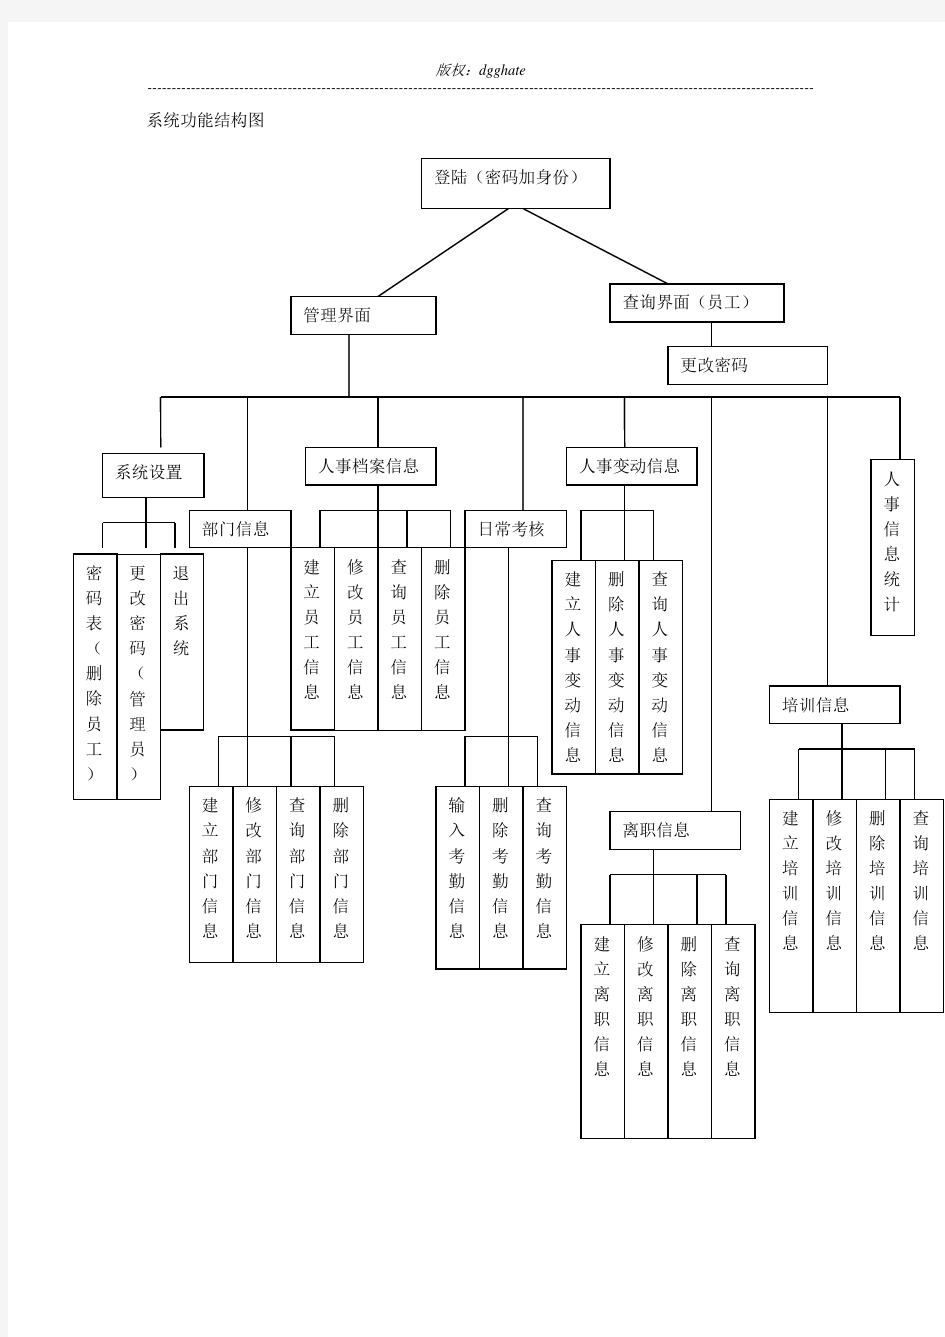 人事档案管理系统-系统功能结构图